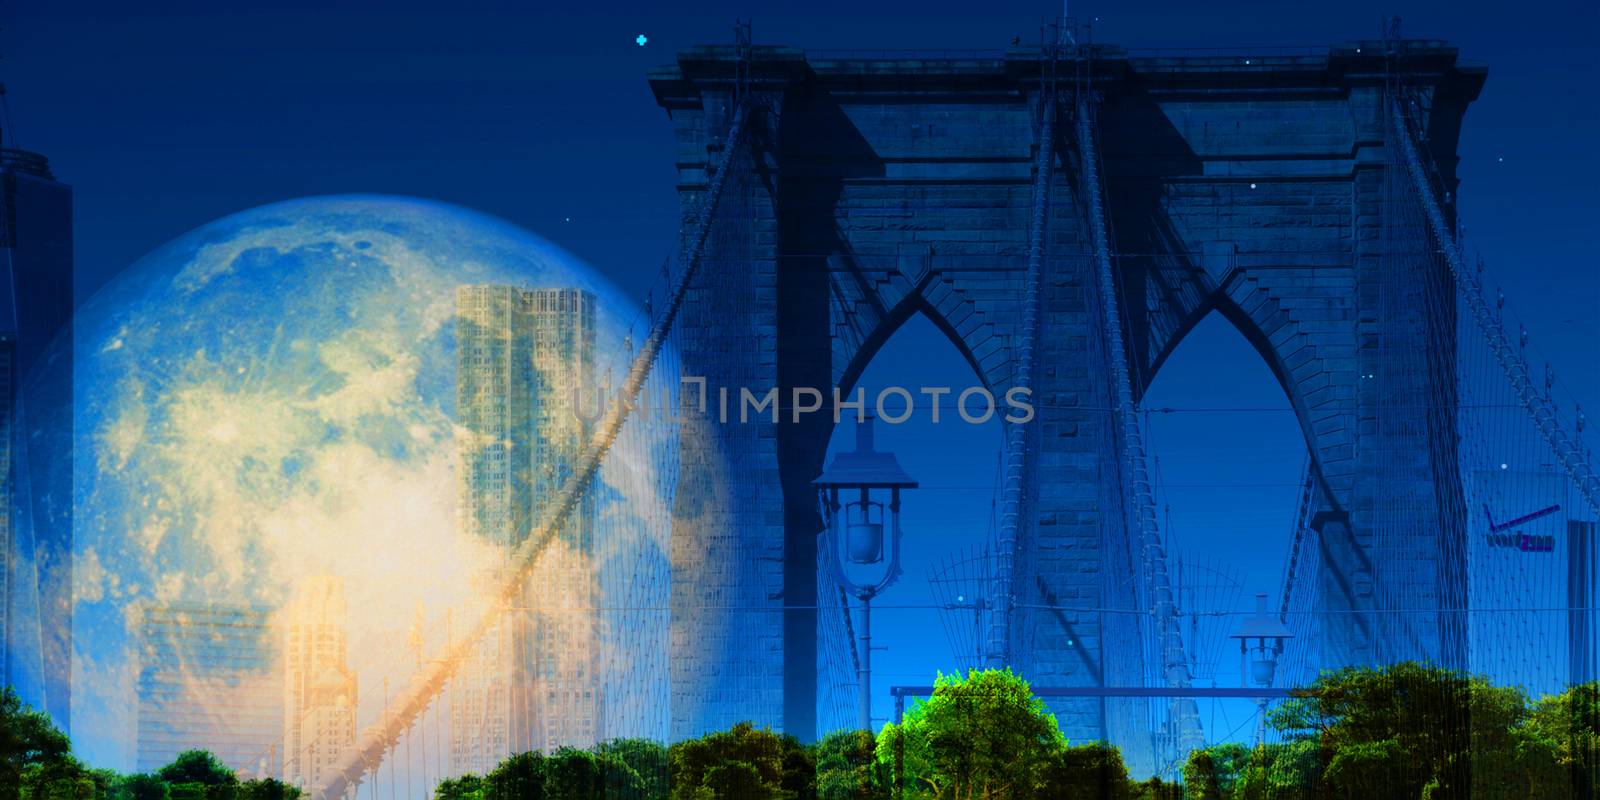 NY Brooklyn Bridge. Bright full moon in the sky